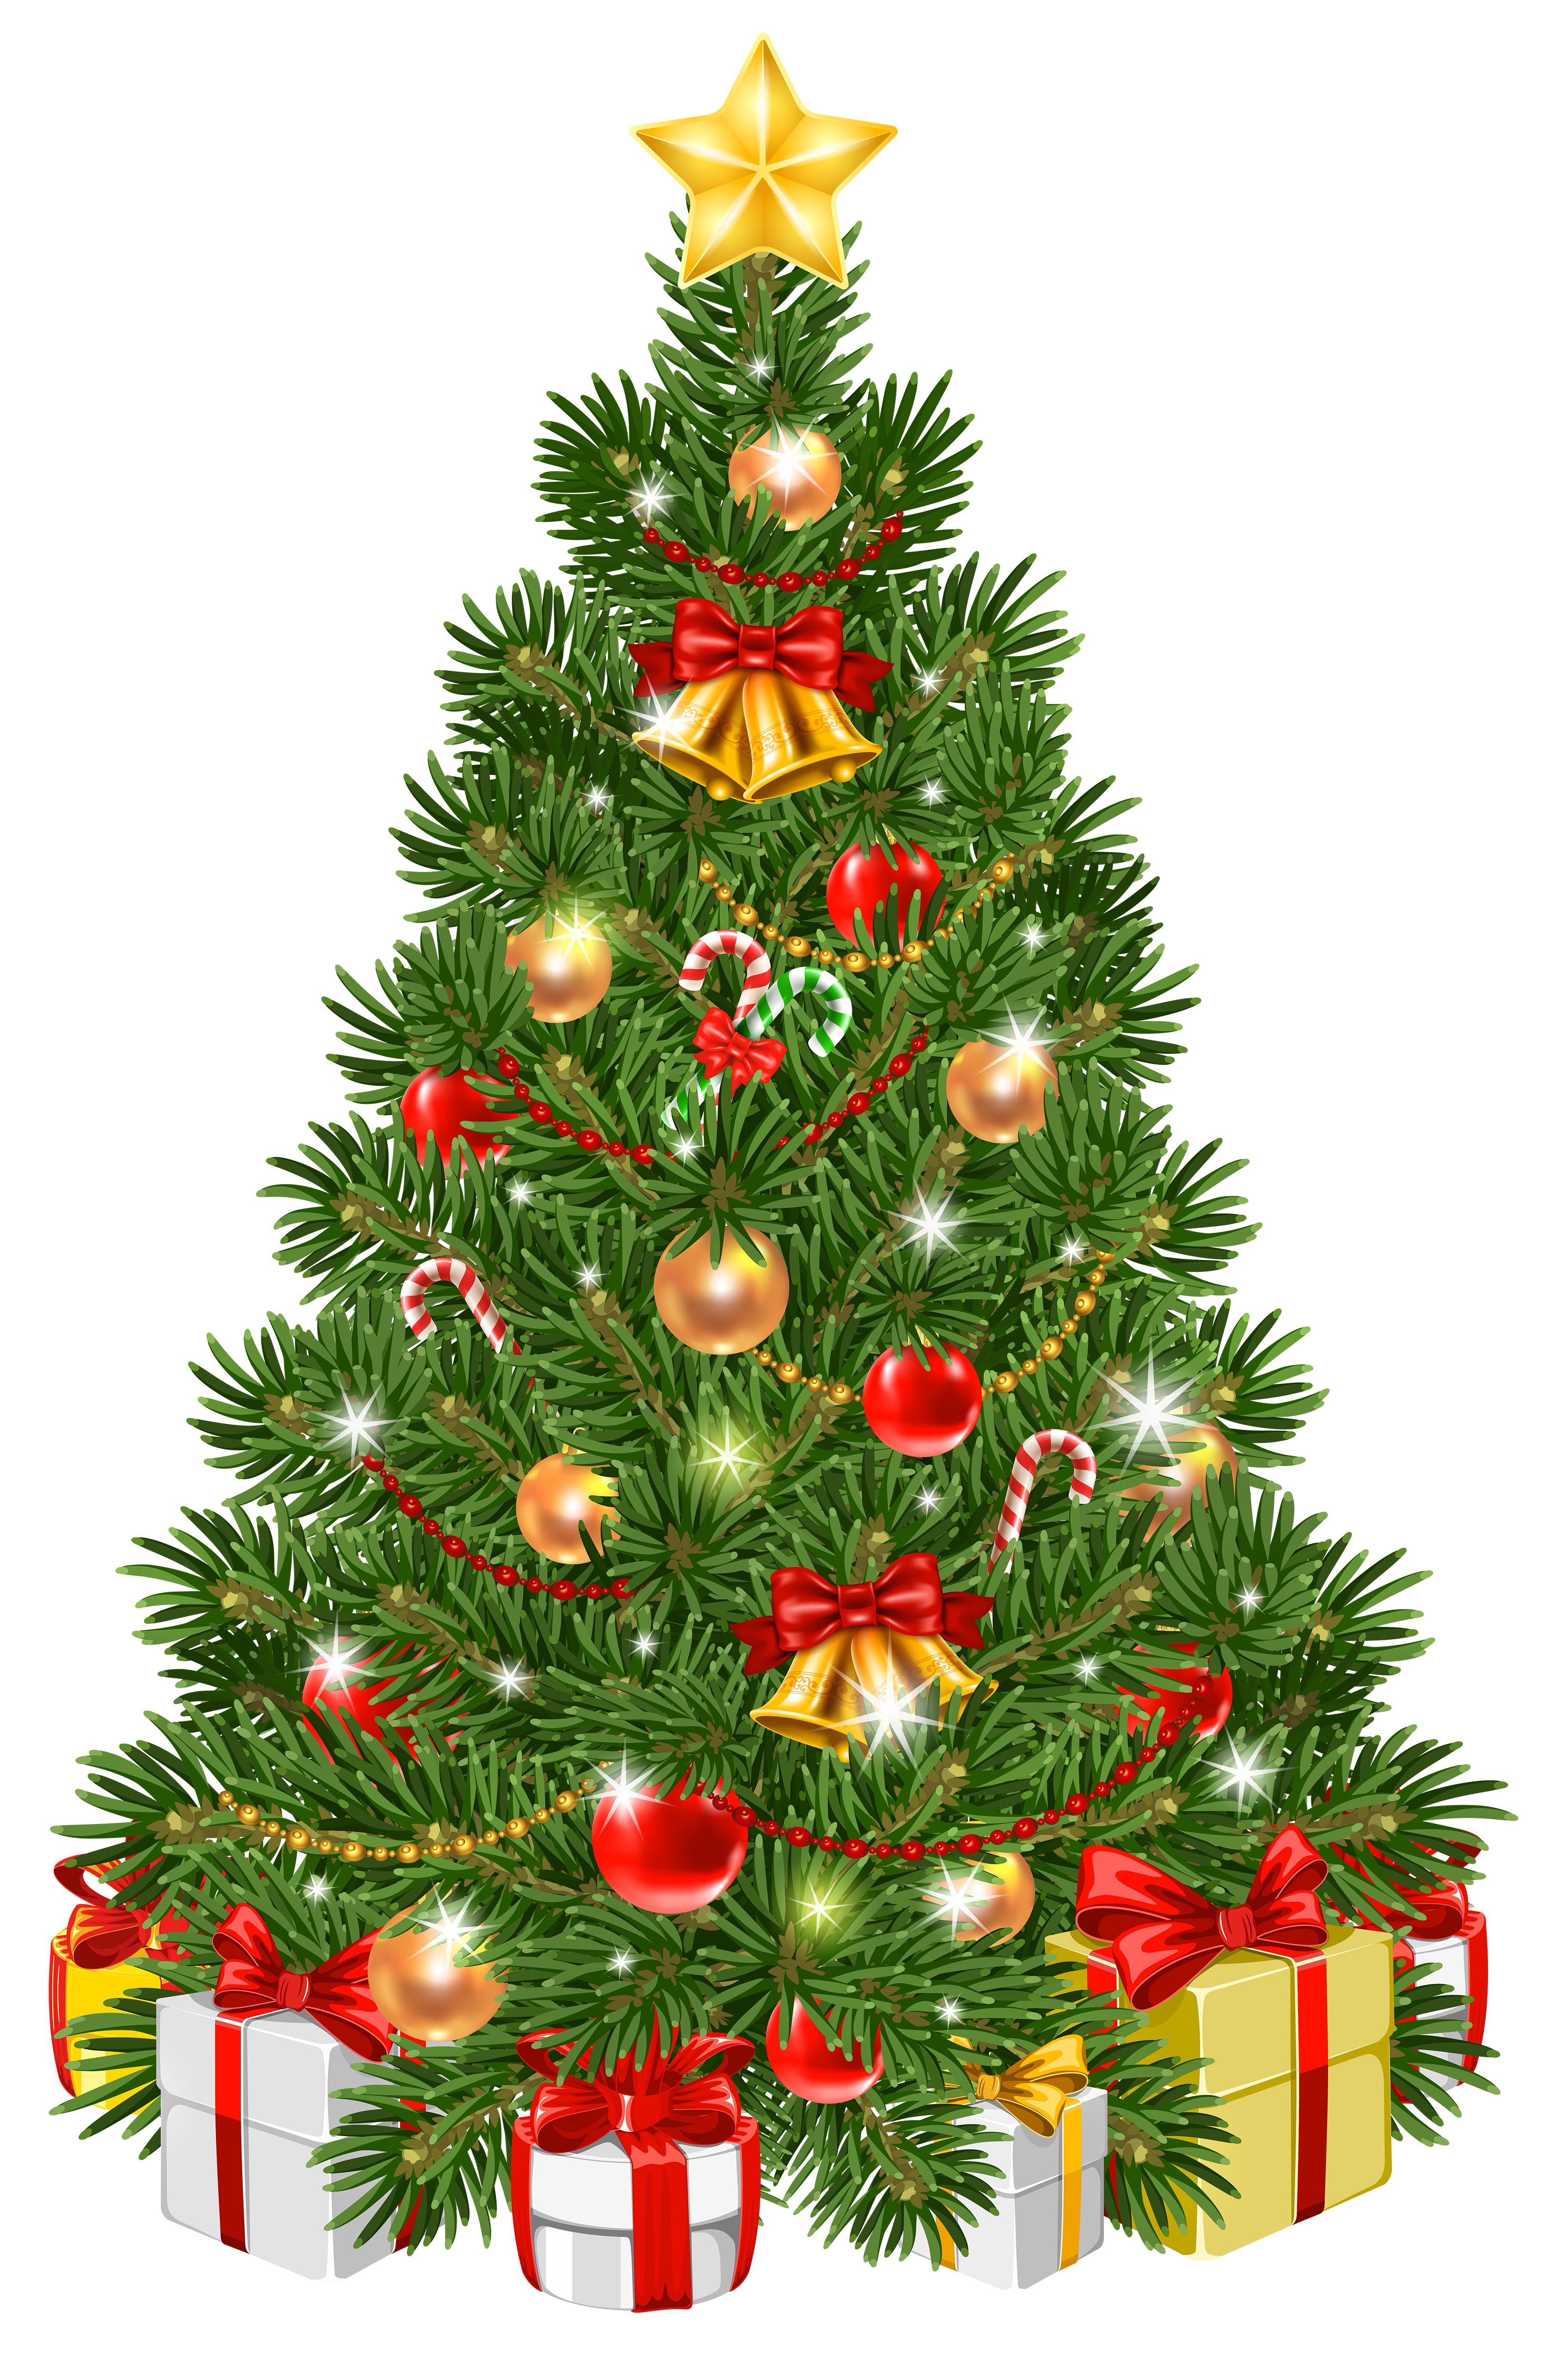 Christmas Tree Png - Big Decorative Christmas Tree PNG Image - PurePNG